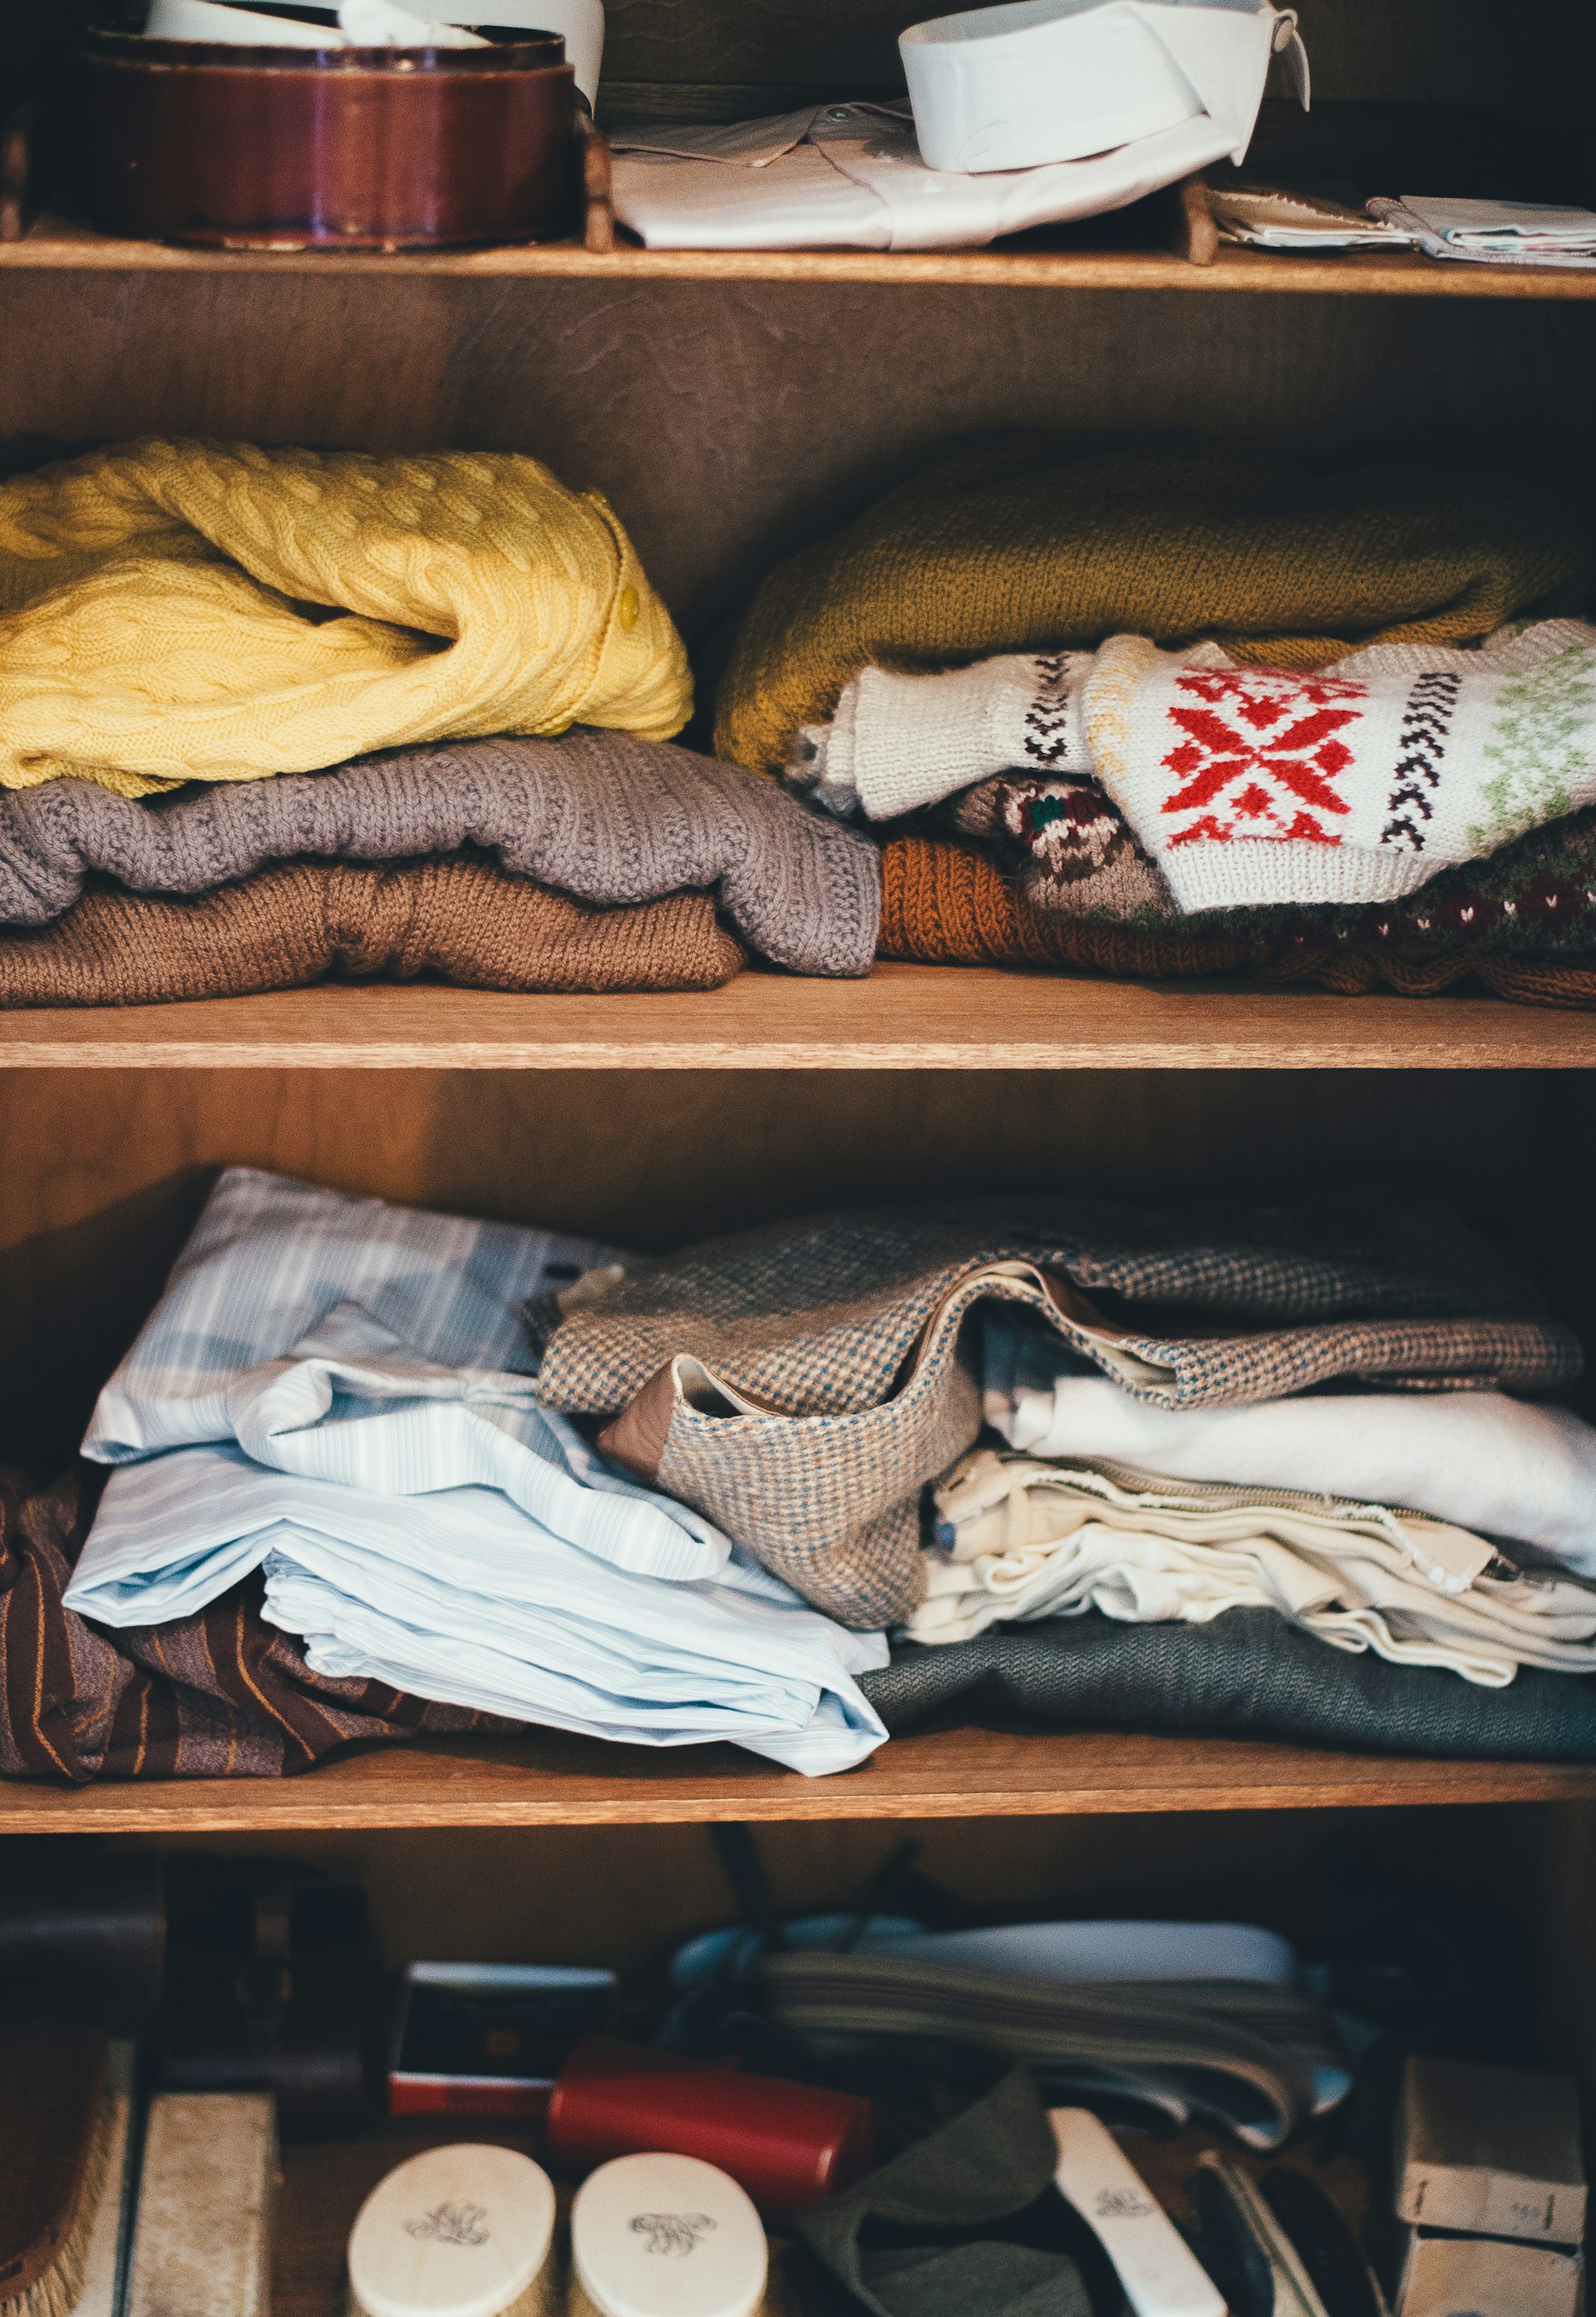 Kleidung auf einem Regal in einem Schrank | Quelle: Unsplash